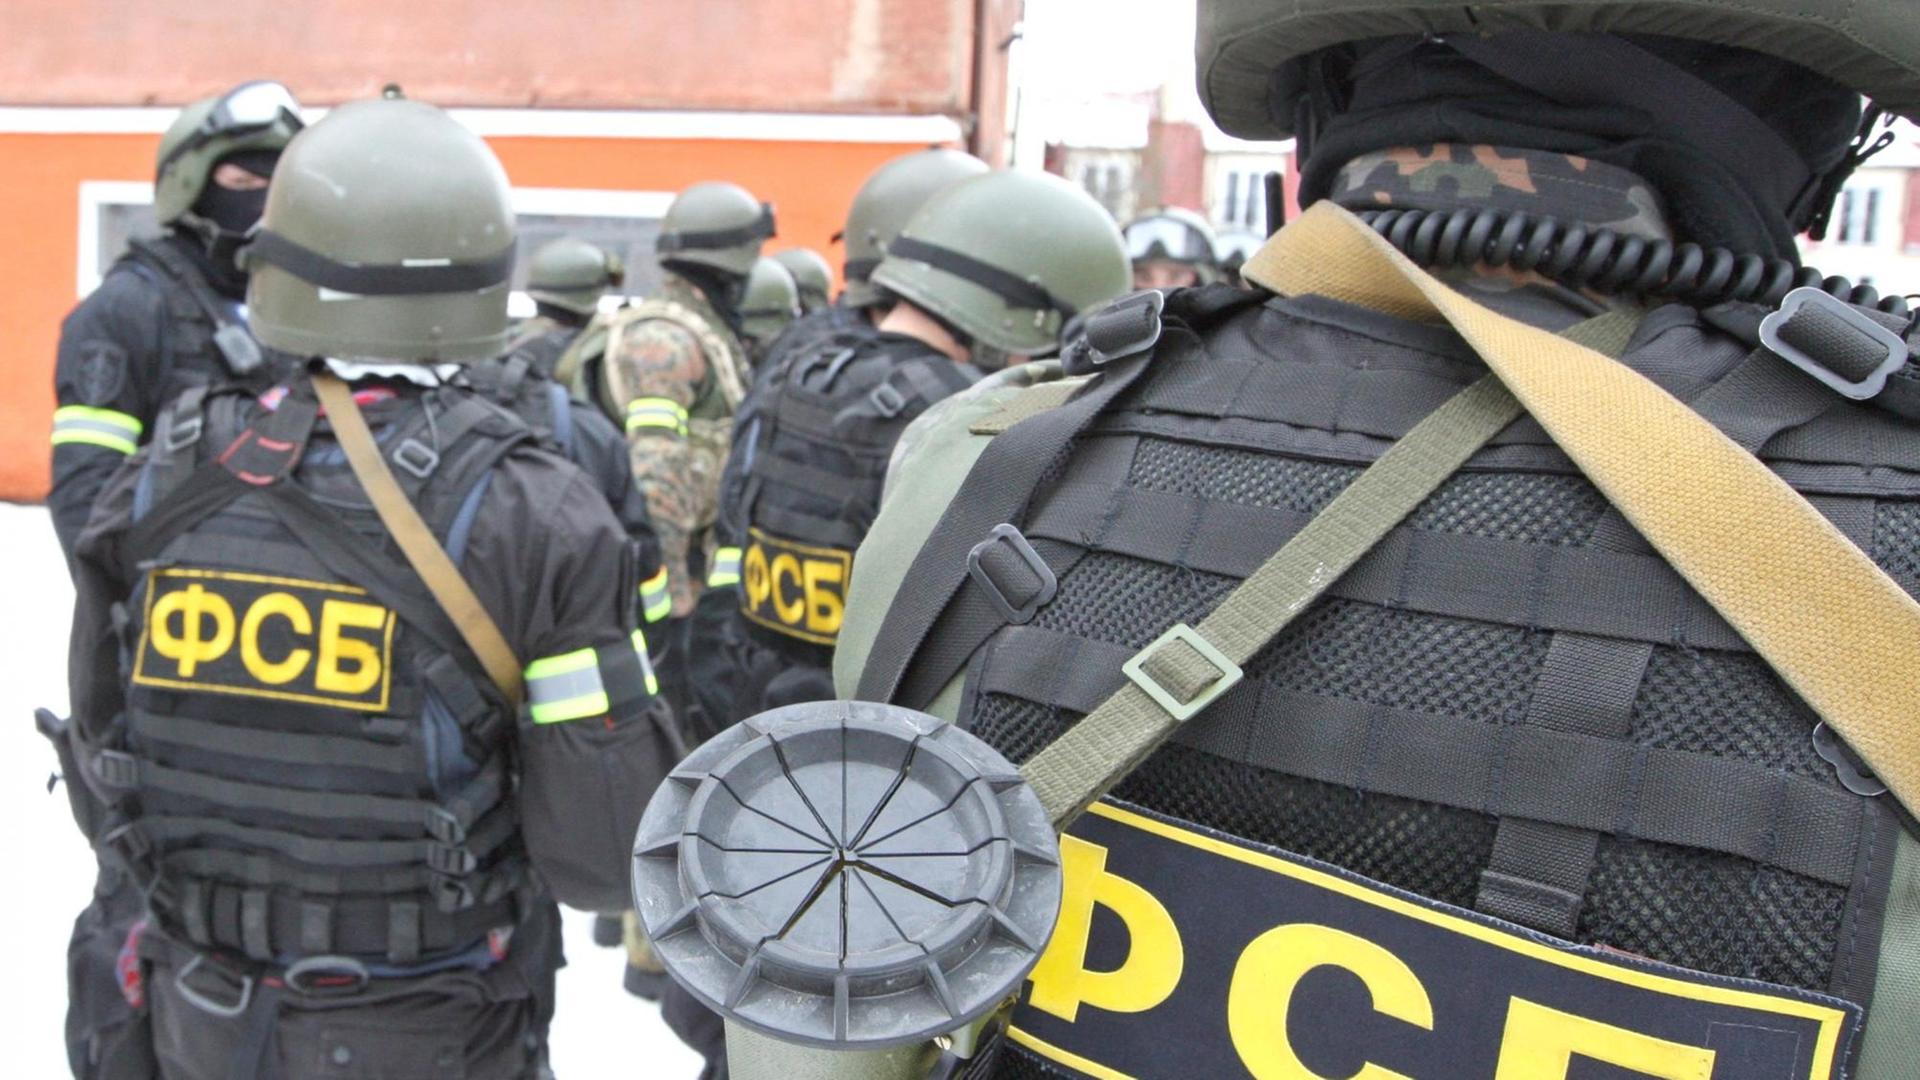 Eine Spezialeinheit des russischen Inlandsgeheimdienstes FSB. Man sieht mehrere Soldaten von hinten mit dem Aufdruck "FSB" auf dem Rücken.